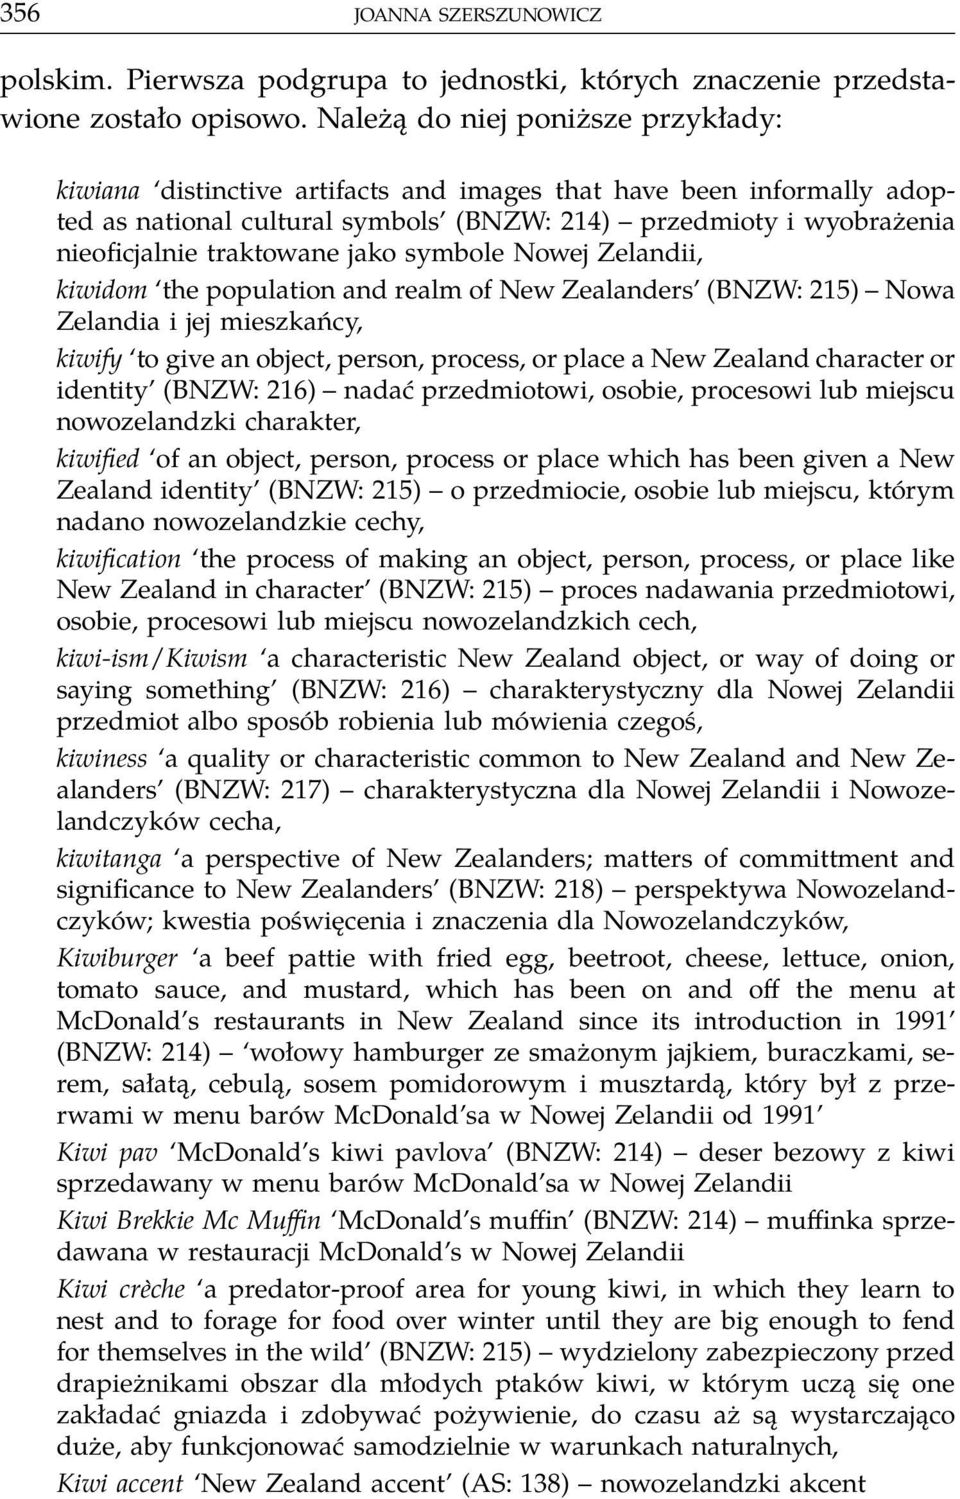 traktowane jako symbole Nowej Zelandii, kiwidom the population and realm of New Zealanders (BNZW: 215) Nowa Zelandia i jej mieszkańcy, kiwify to give an object, person, process, or place a New